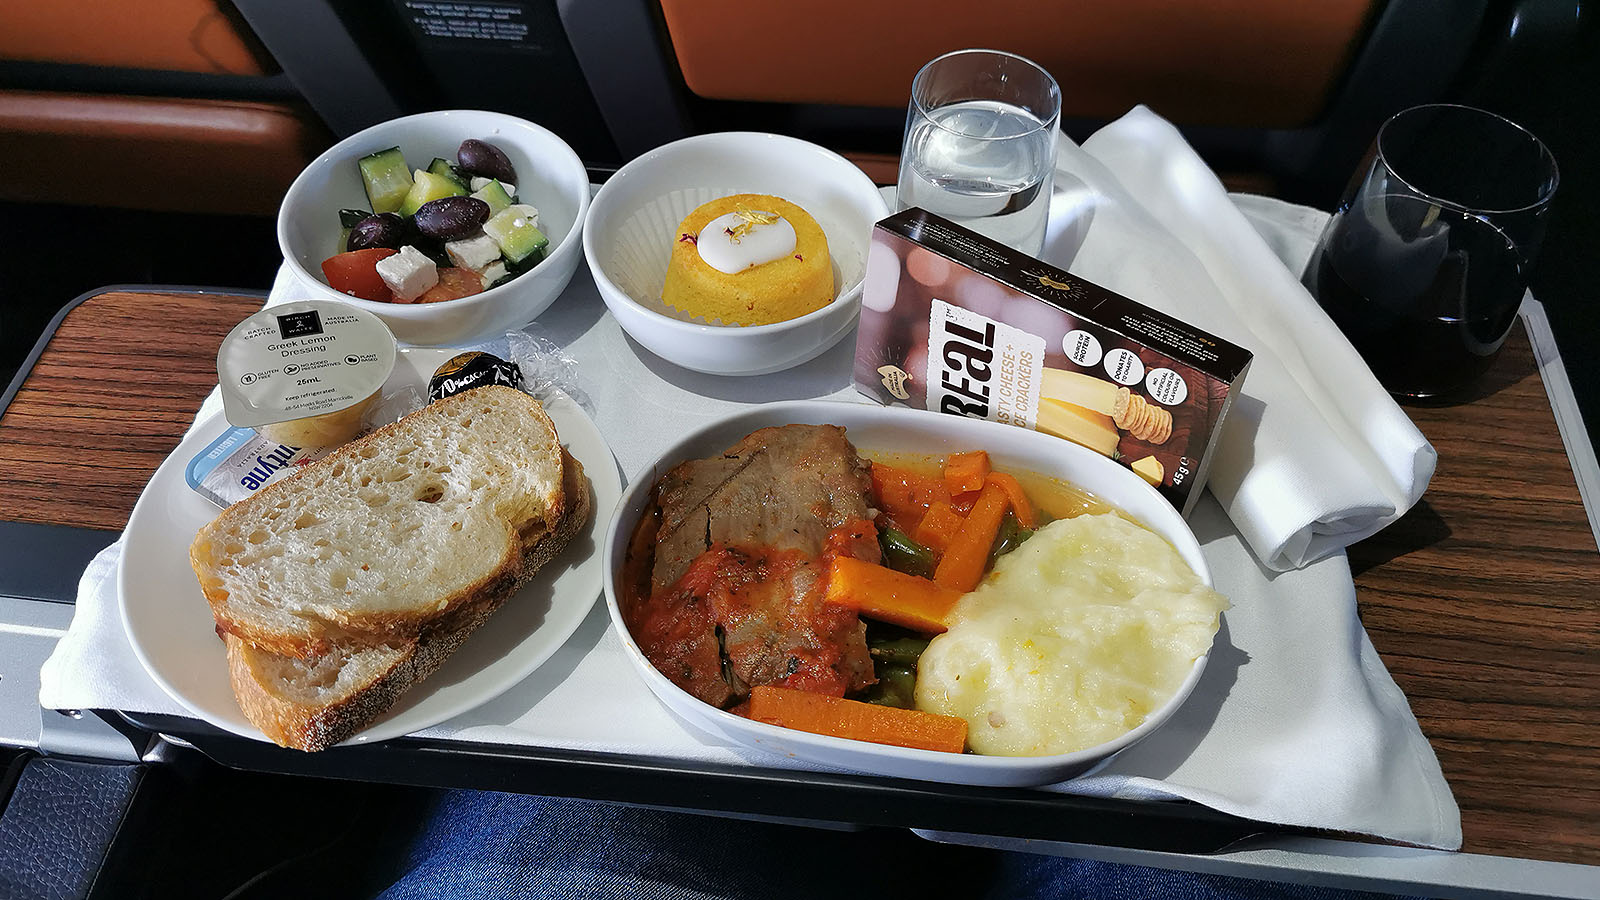 Hot meal in Qantas A380 Premium Economy